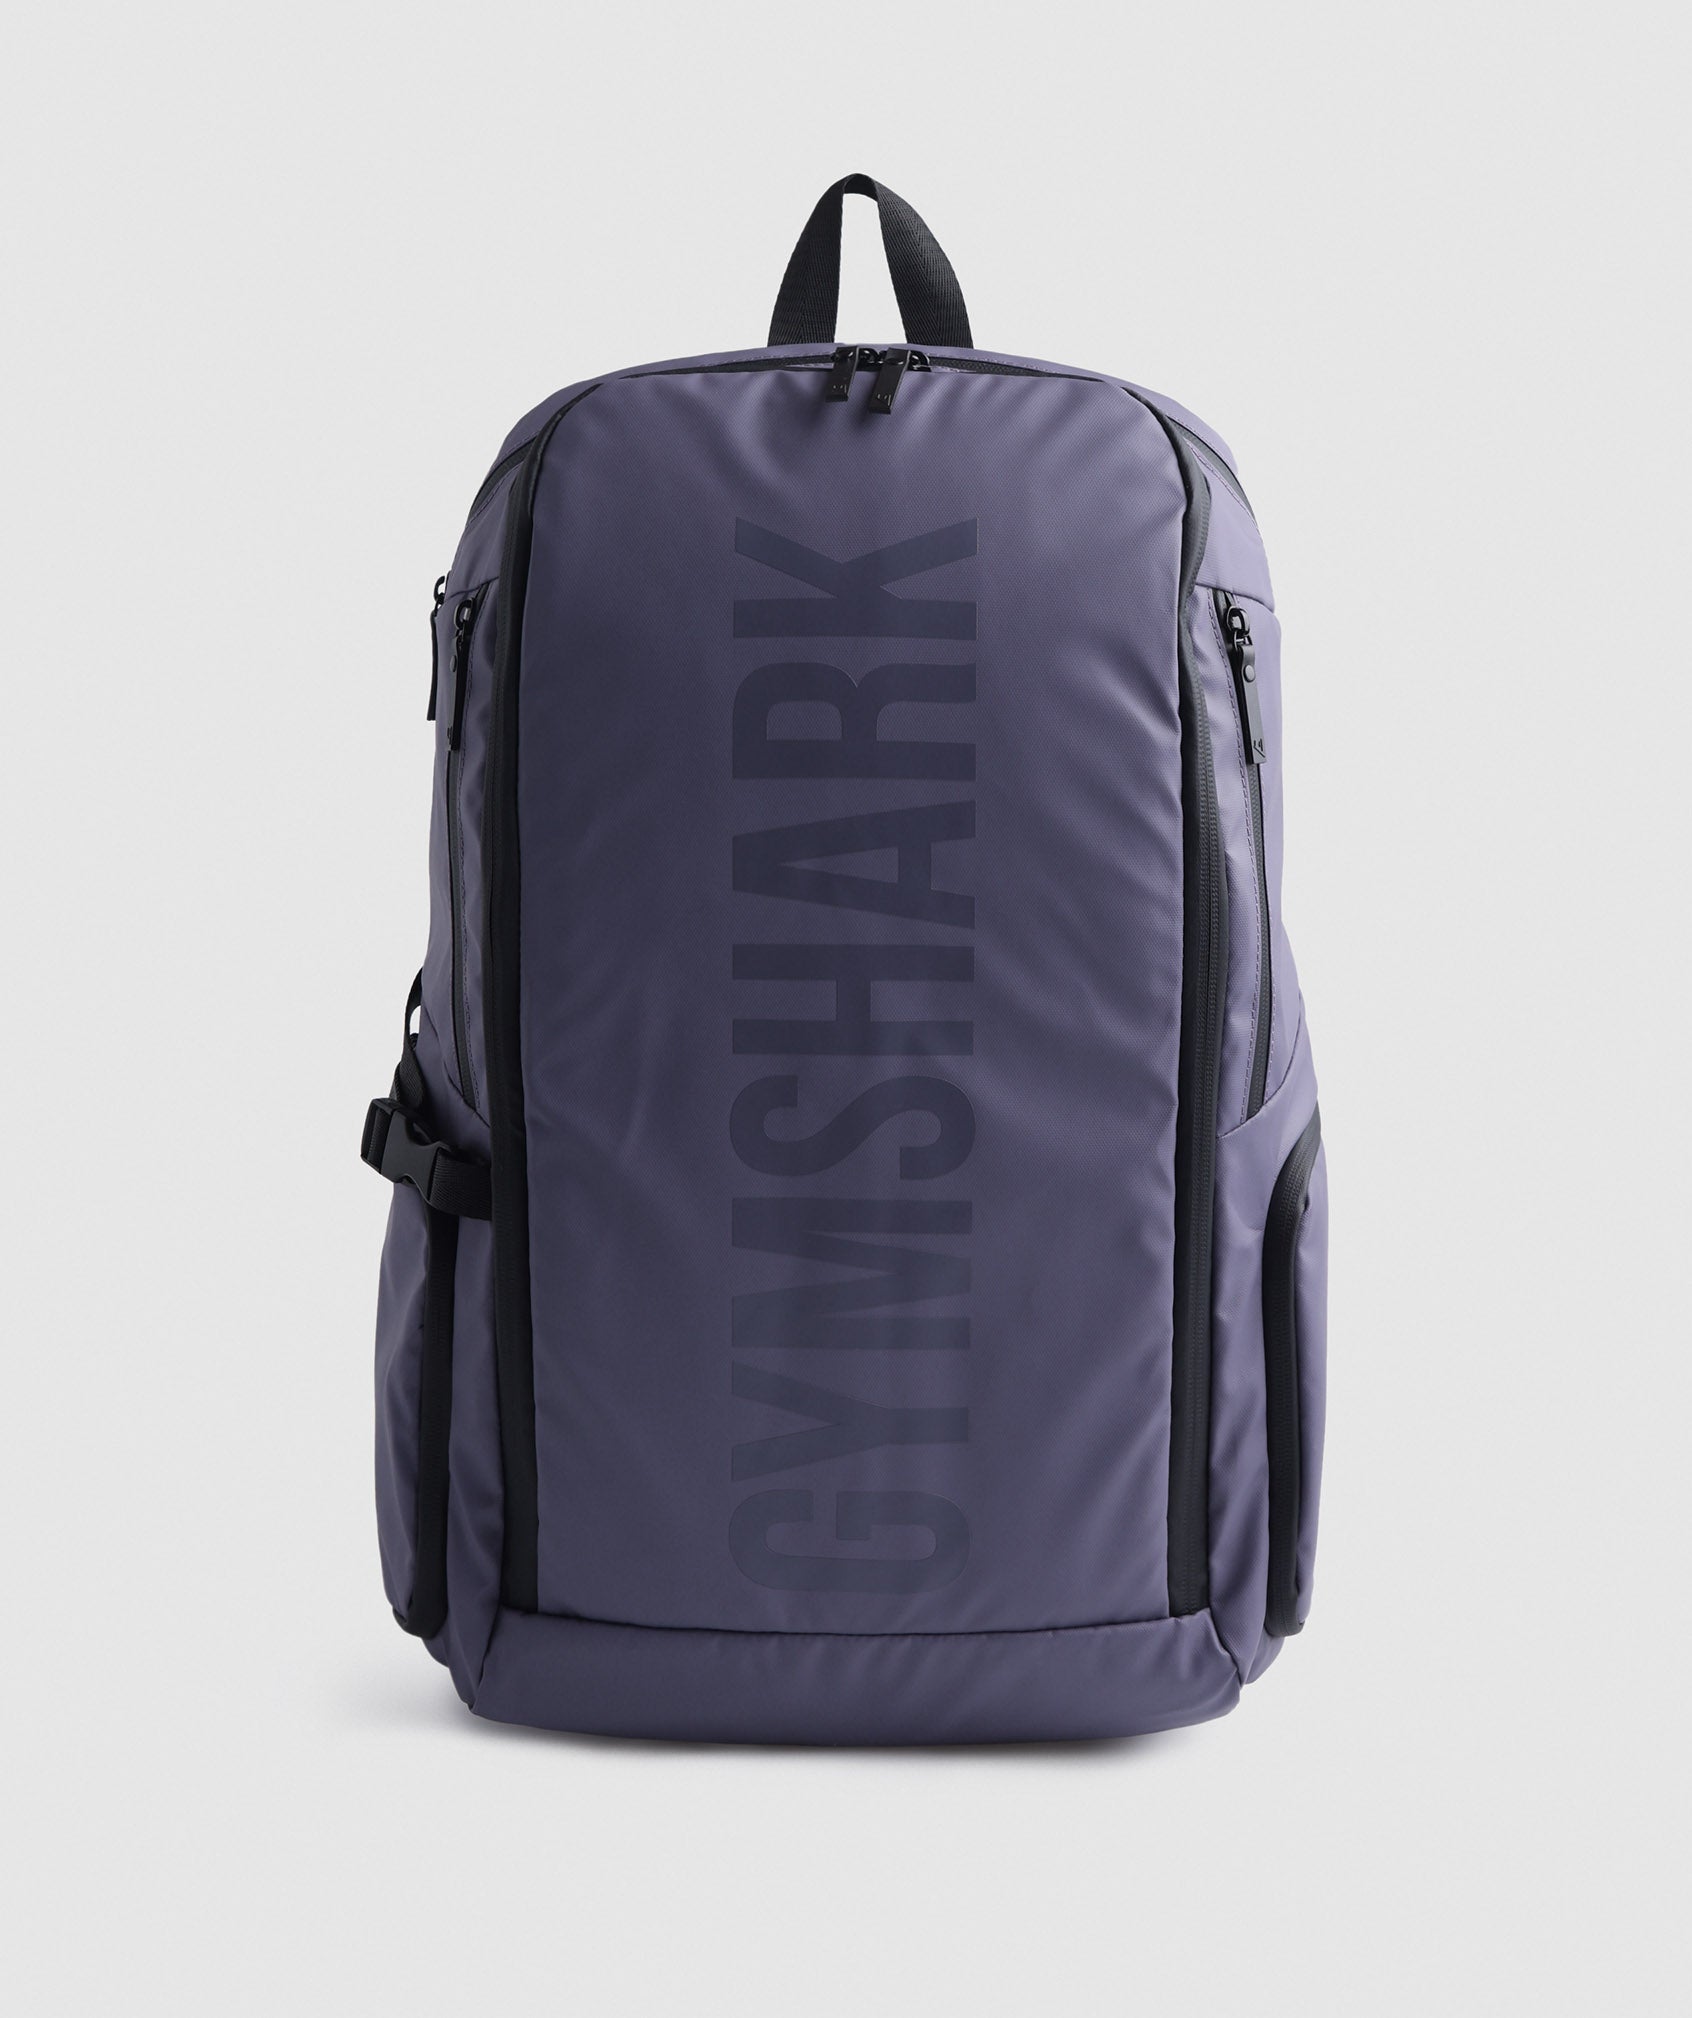 X-Series 0.3 Backpack in Mercury Purple